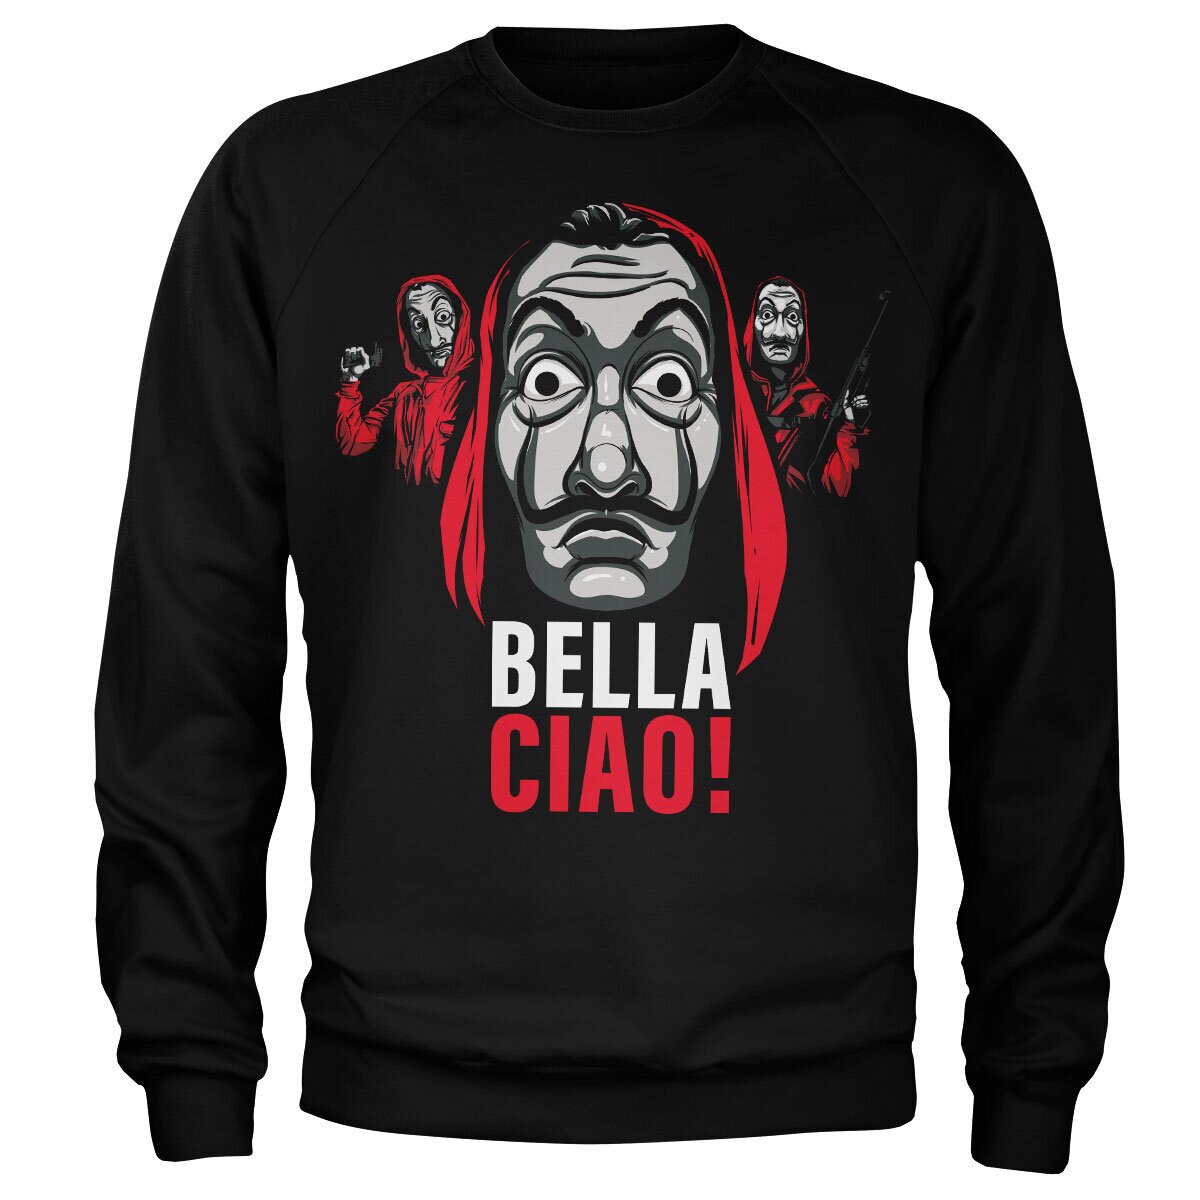 La Casa De Papel - Bella Ciao! Sweatshirt